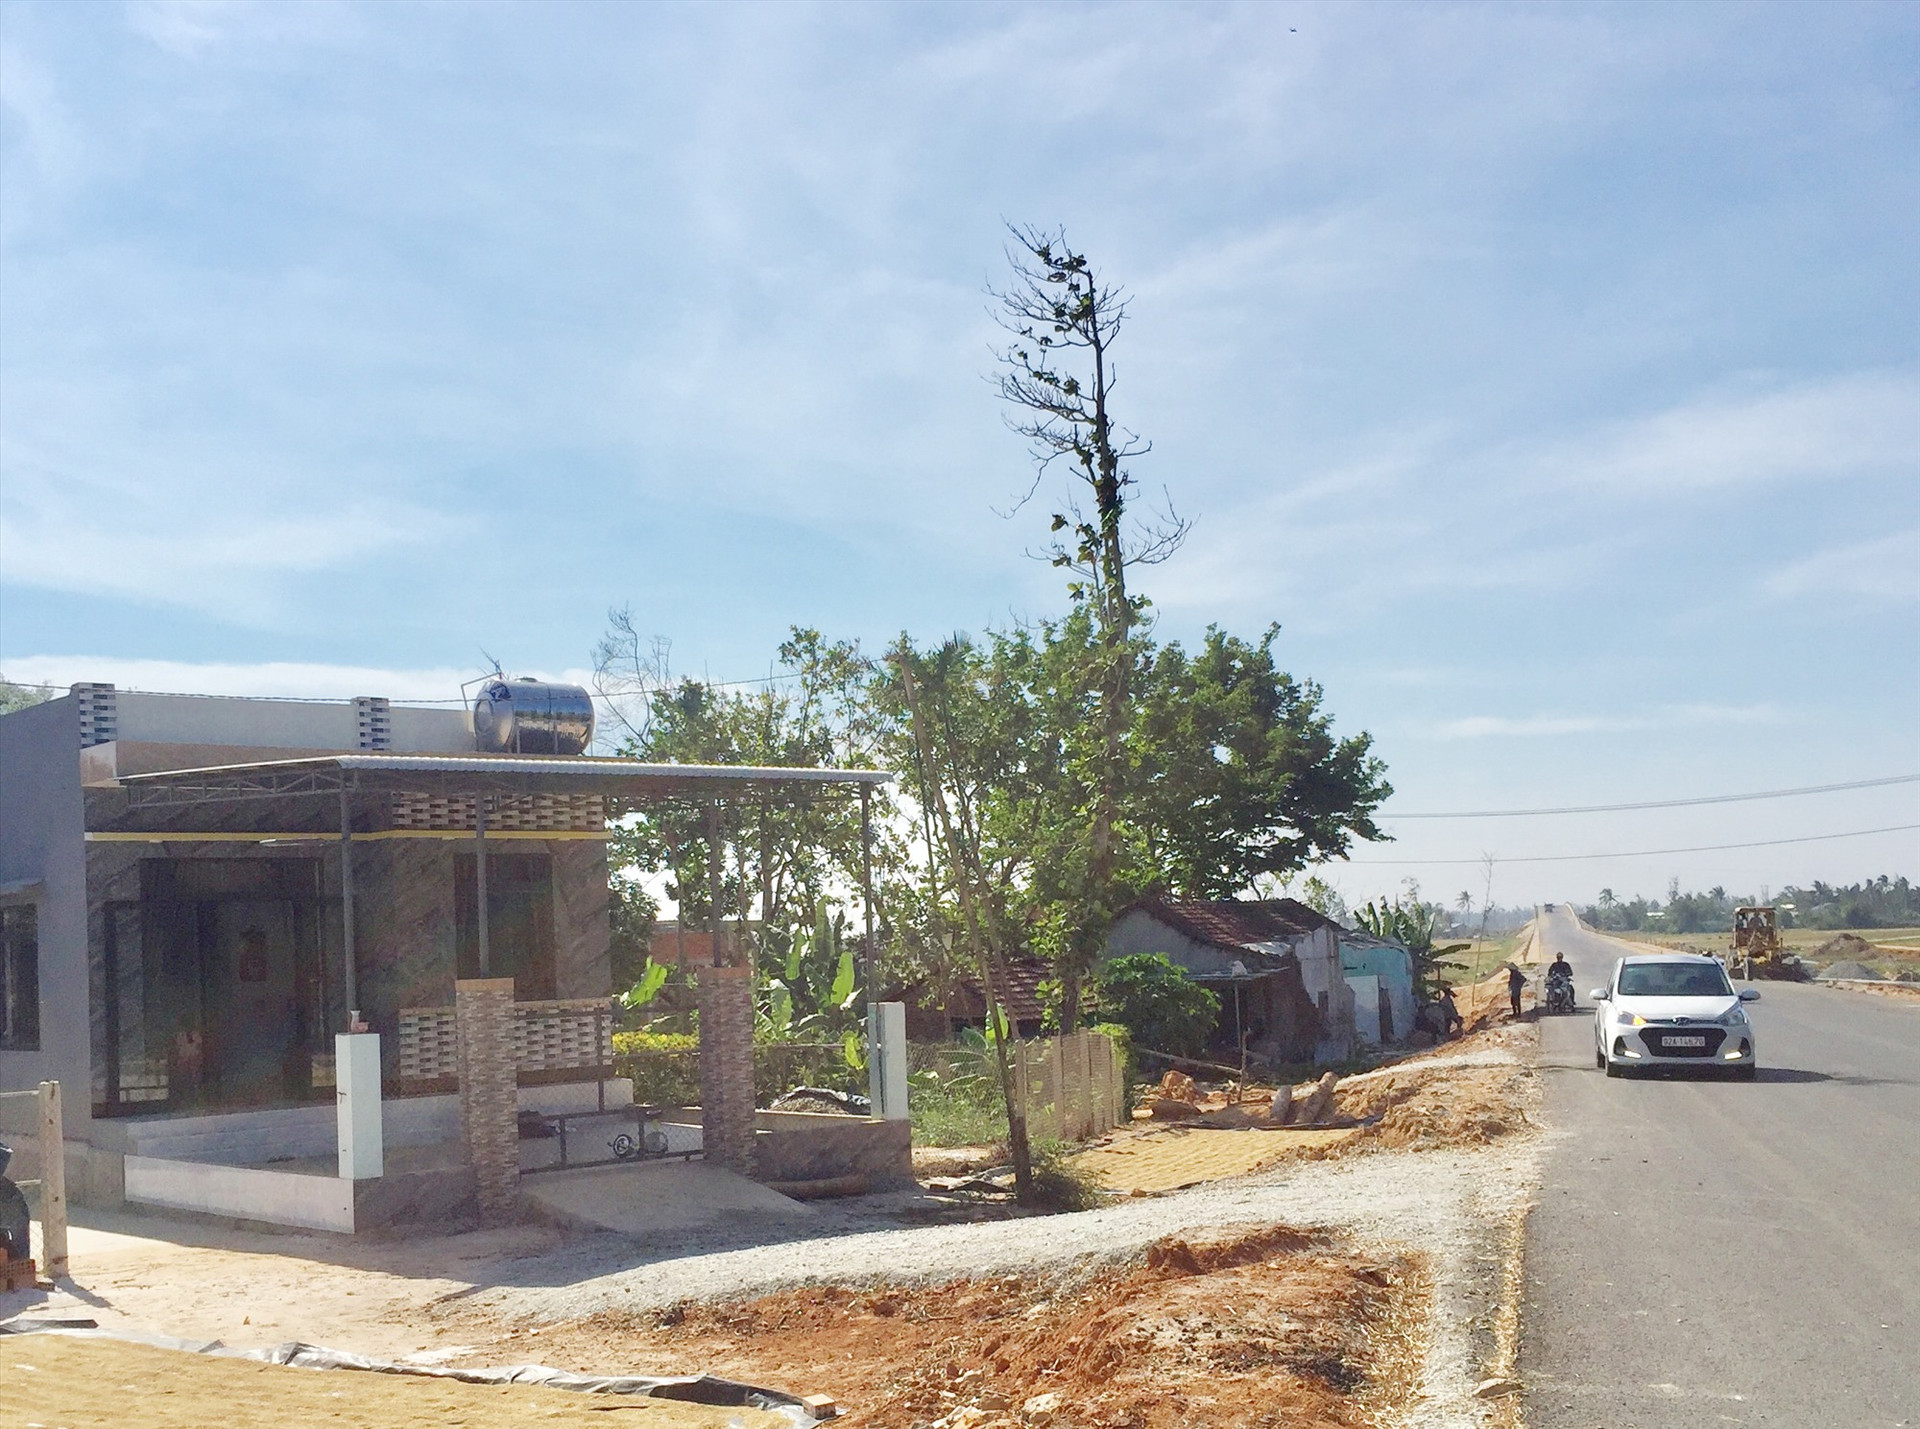 Người dân xây dựng nhà kiên cố trong vệt phía tây đường Võ Chí Công qua xã Tam Hòa (khu vực này được quy hoạch xây dựng làn đường giai đoạn 2).